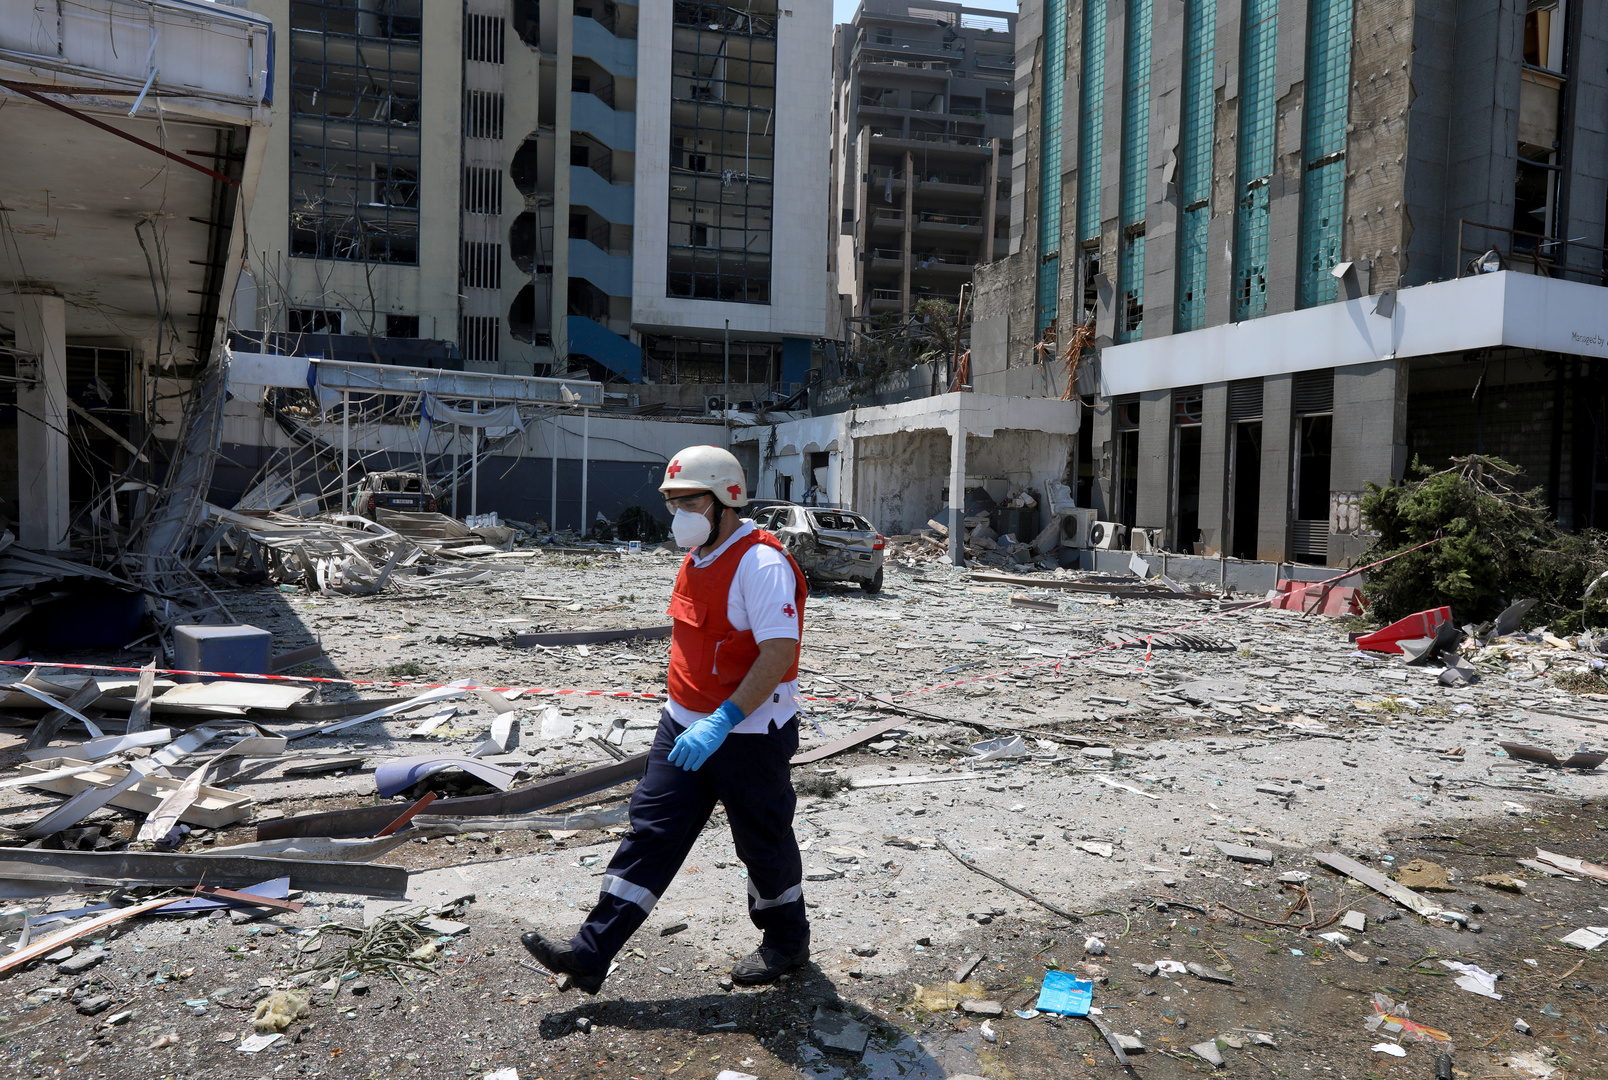 القاهرة تعلن بدء استقبال المستشفى الميداني المصري في لبنان لمصابي انفجار مرفأ بيروت الضخم